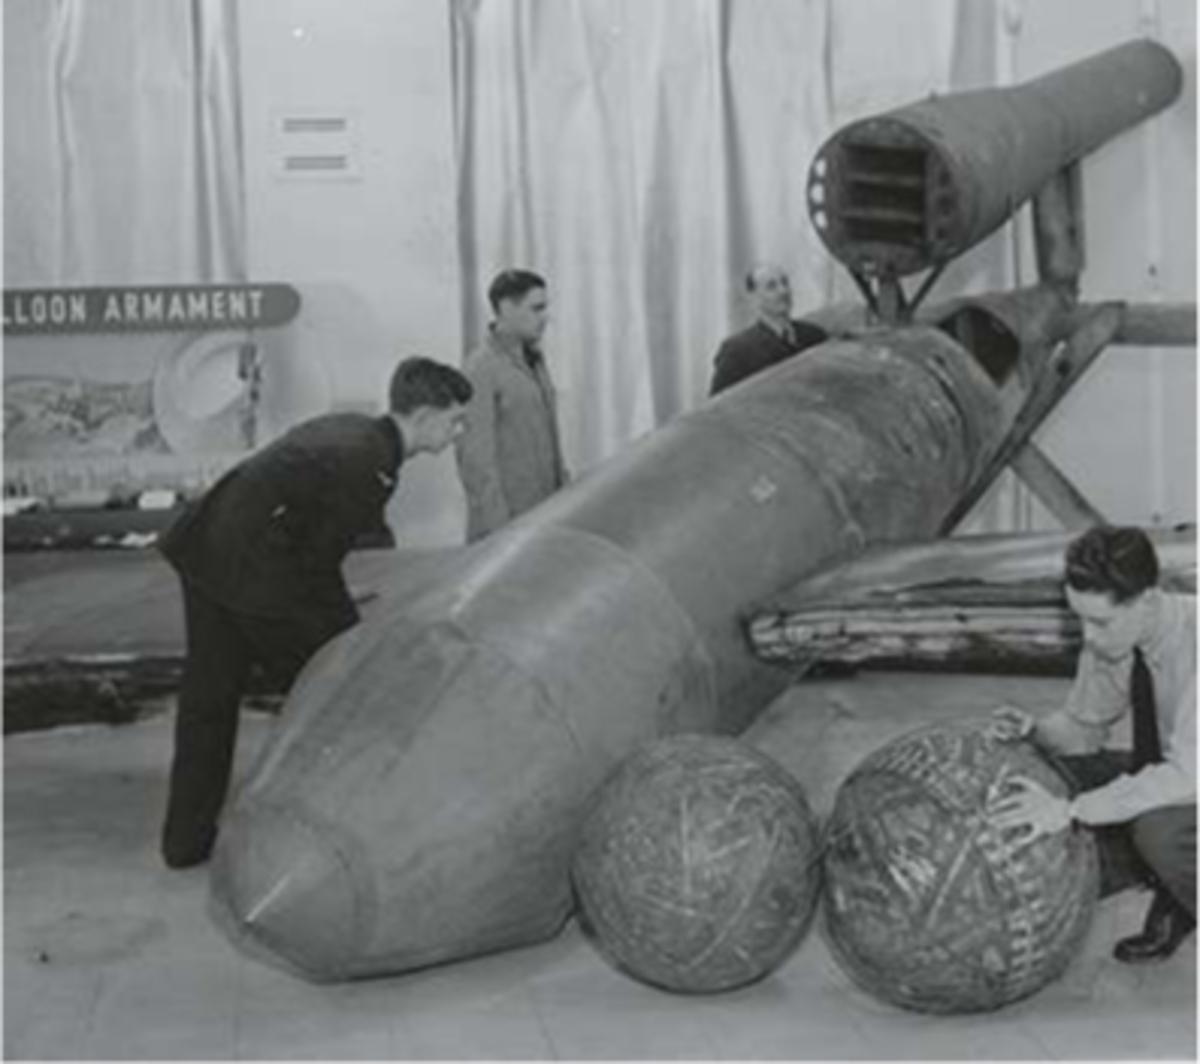 30 oktober 1944: deze V1-bom is in Londen geland zonder te ontploffen en wordt ontmanteld voor een tentoonstelling over deze vliegende bommen.